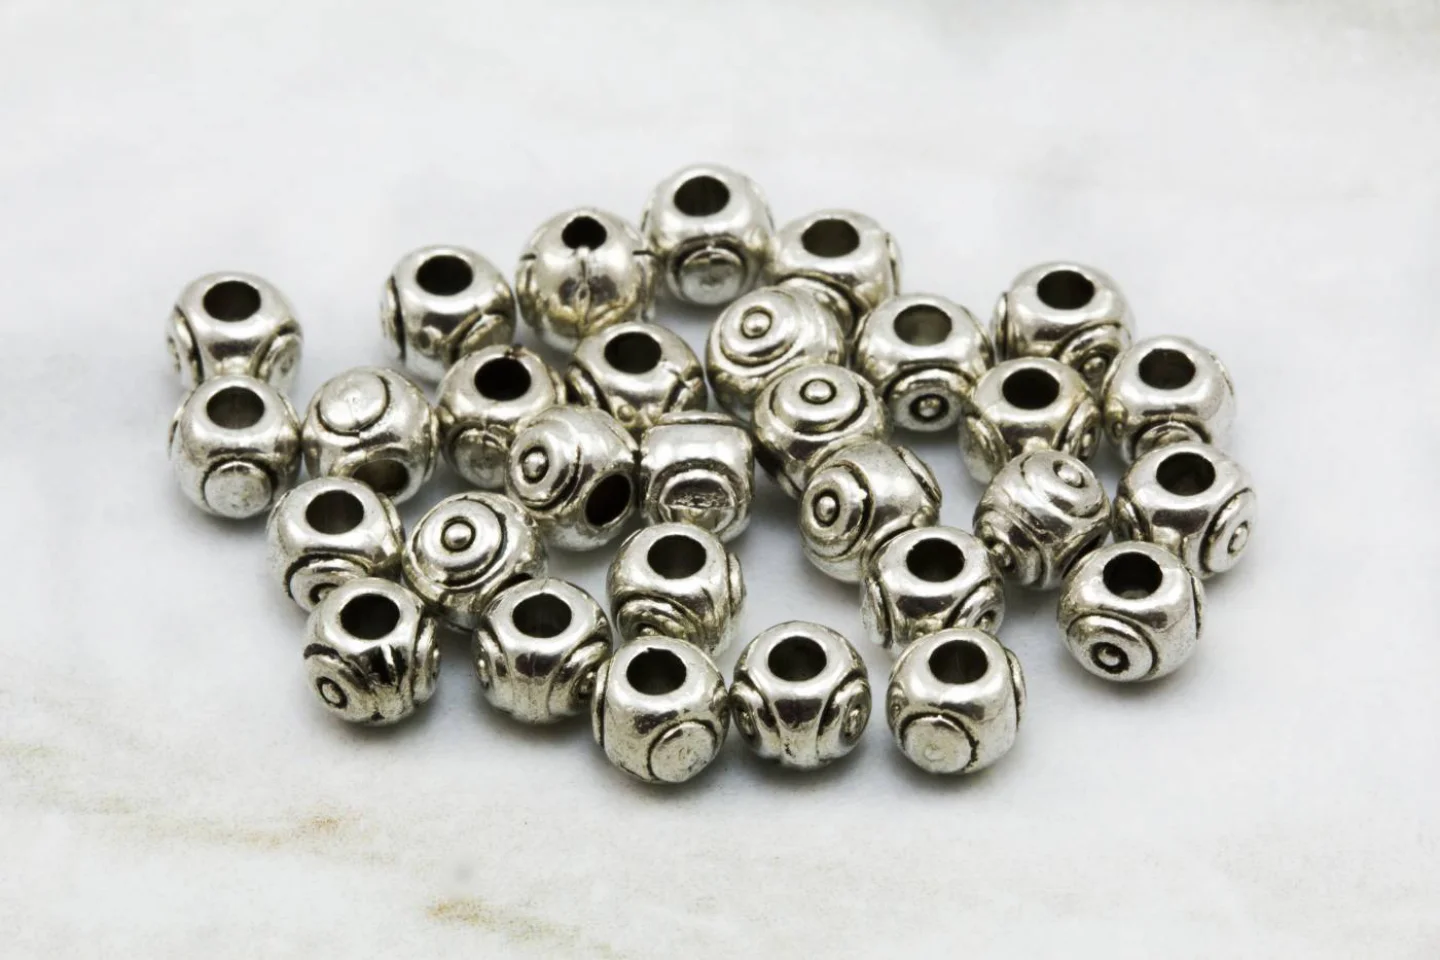 5mm-metal-jewelry-spacer-bead-findings.